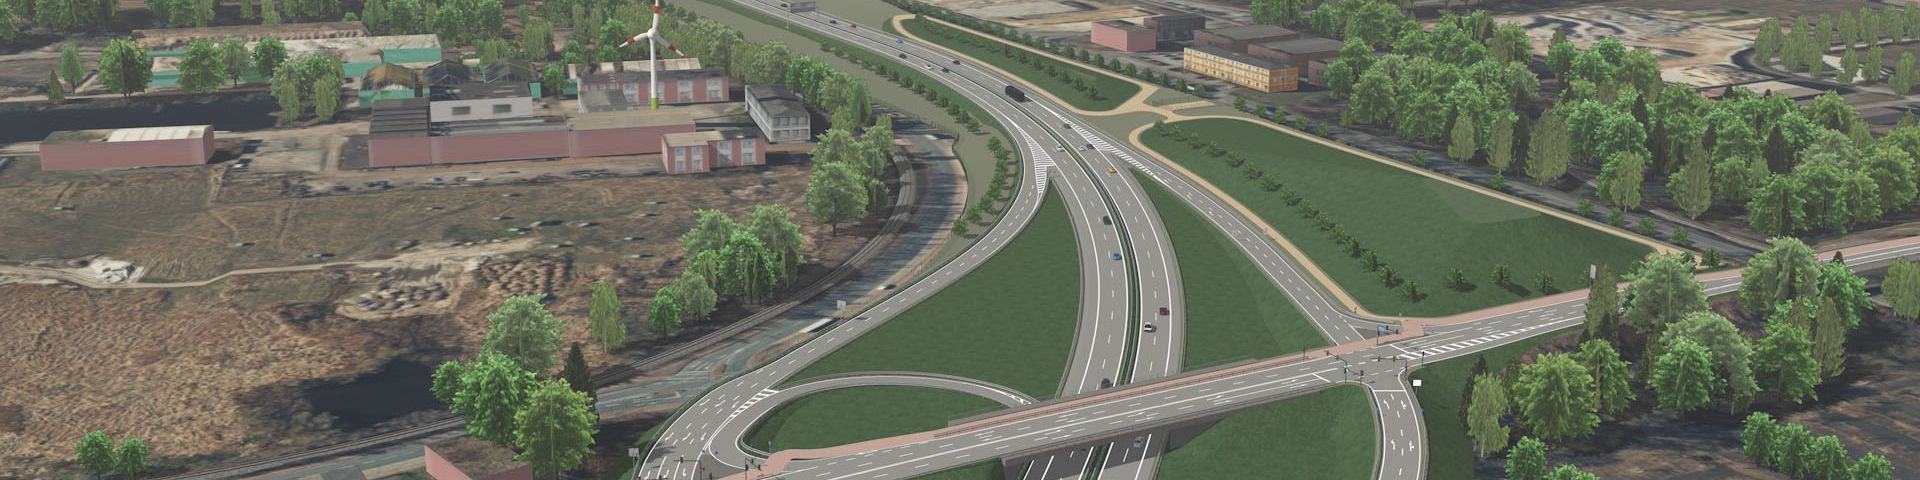 3D Visualisierung eines Autobahnkreuzes